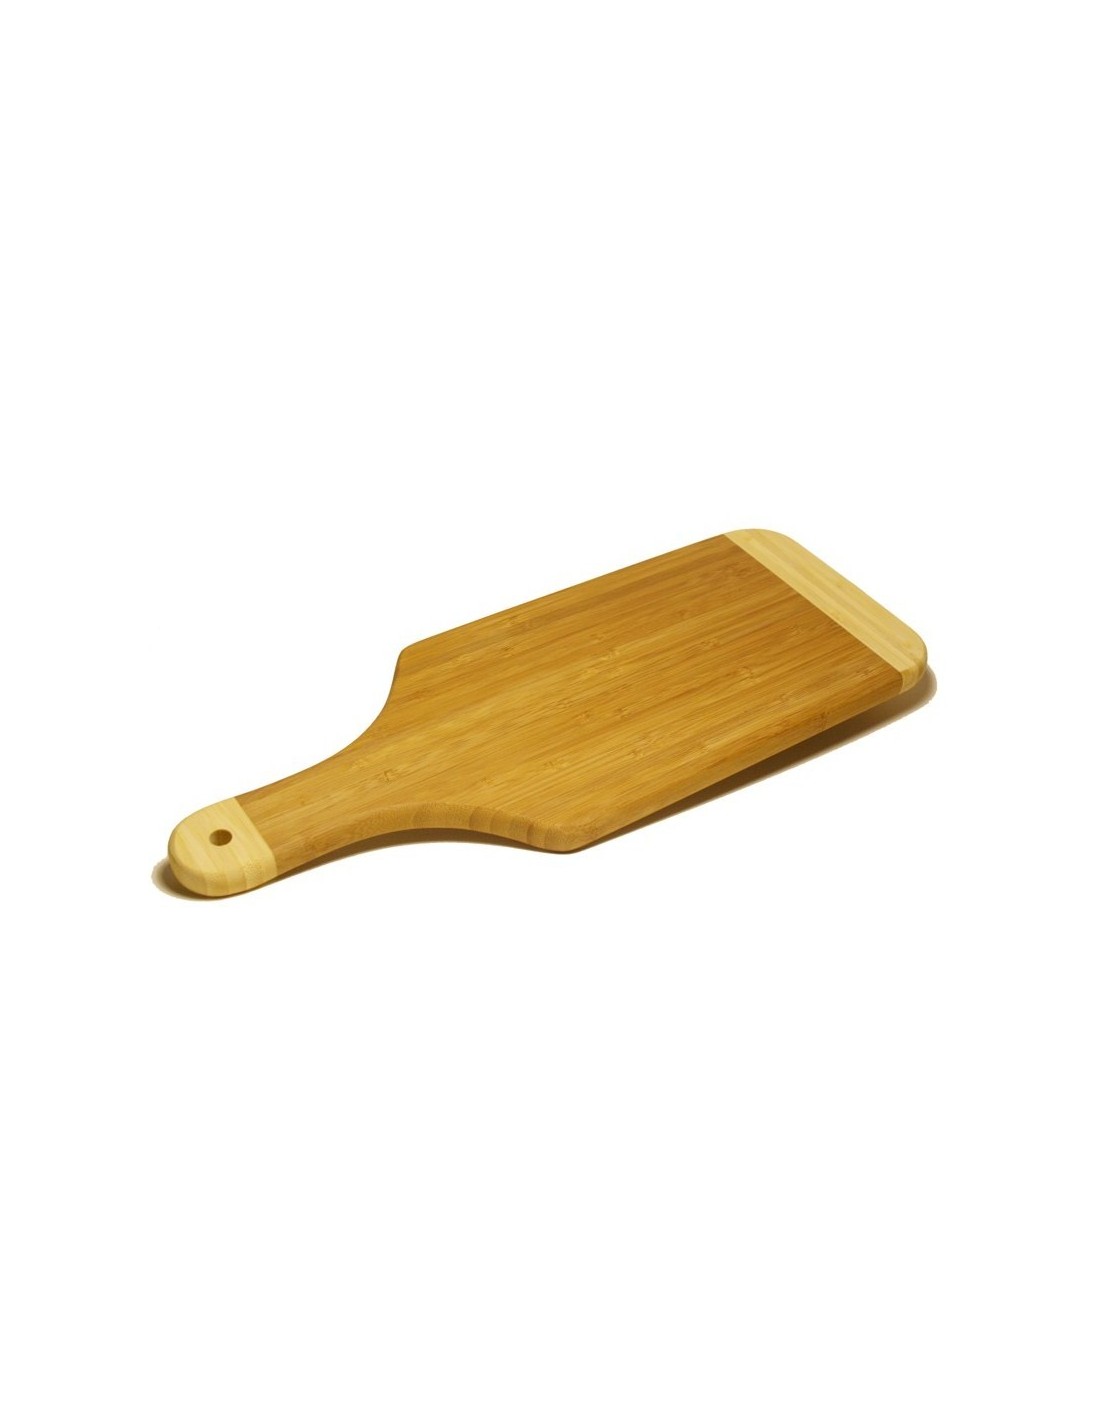 Tabla de corte de madera de bambú para alimentos tabla de corte de madera es utensilio de cocina imprescindible que utilizaras a